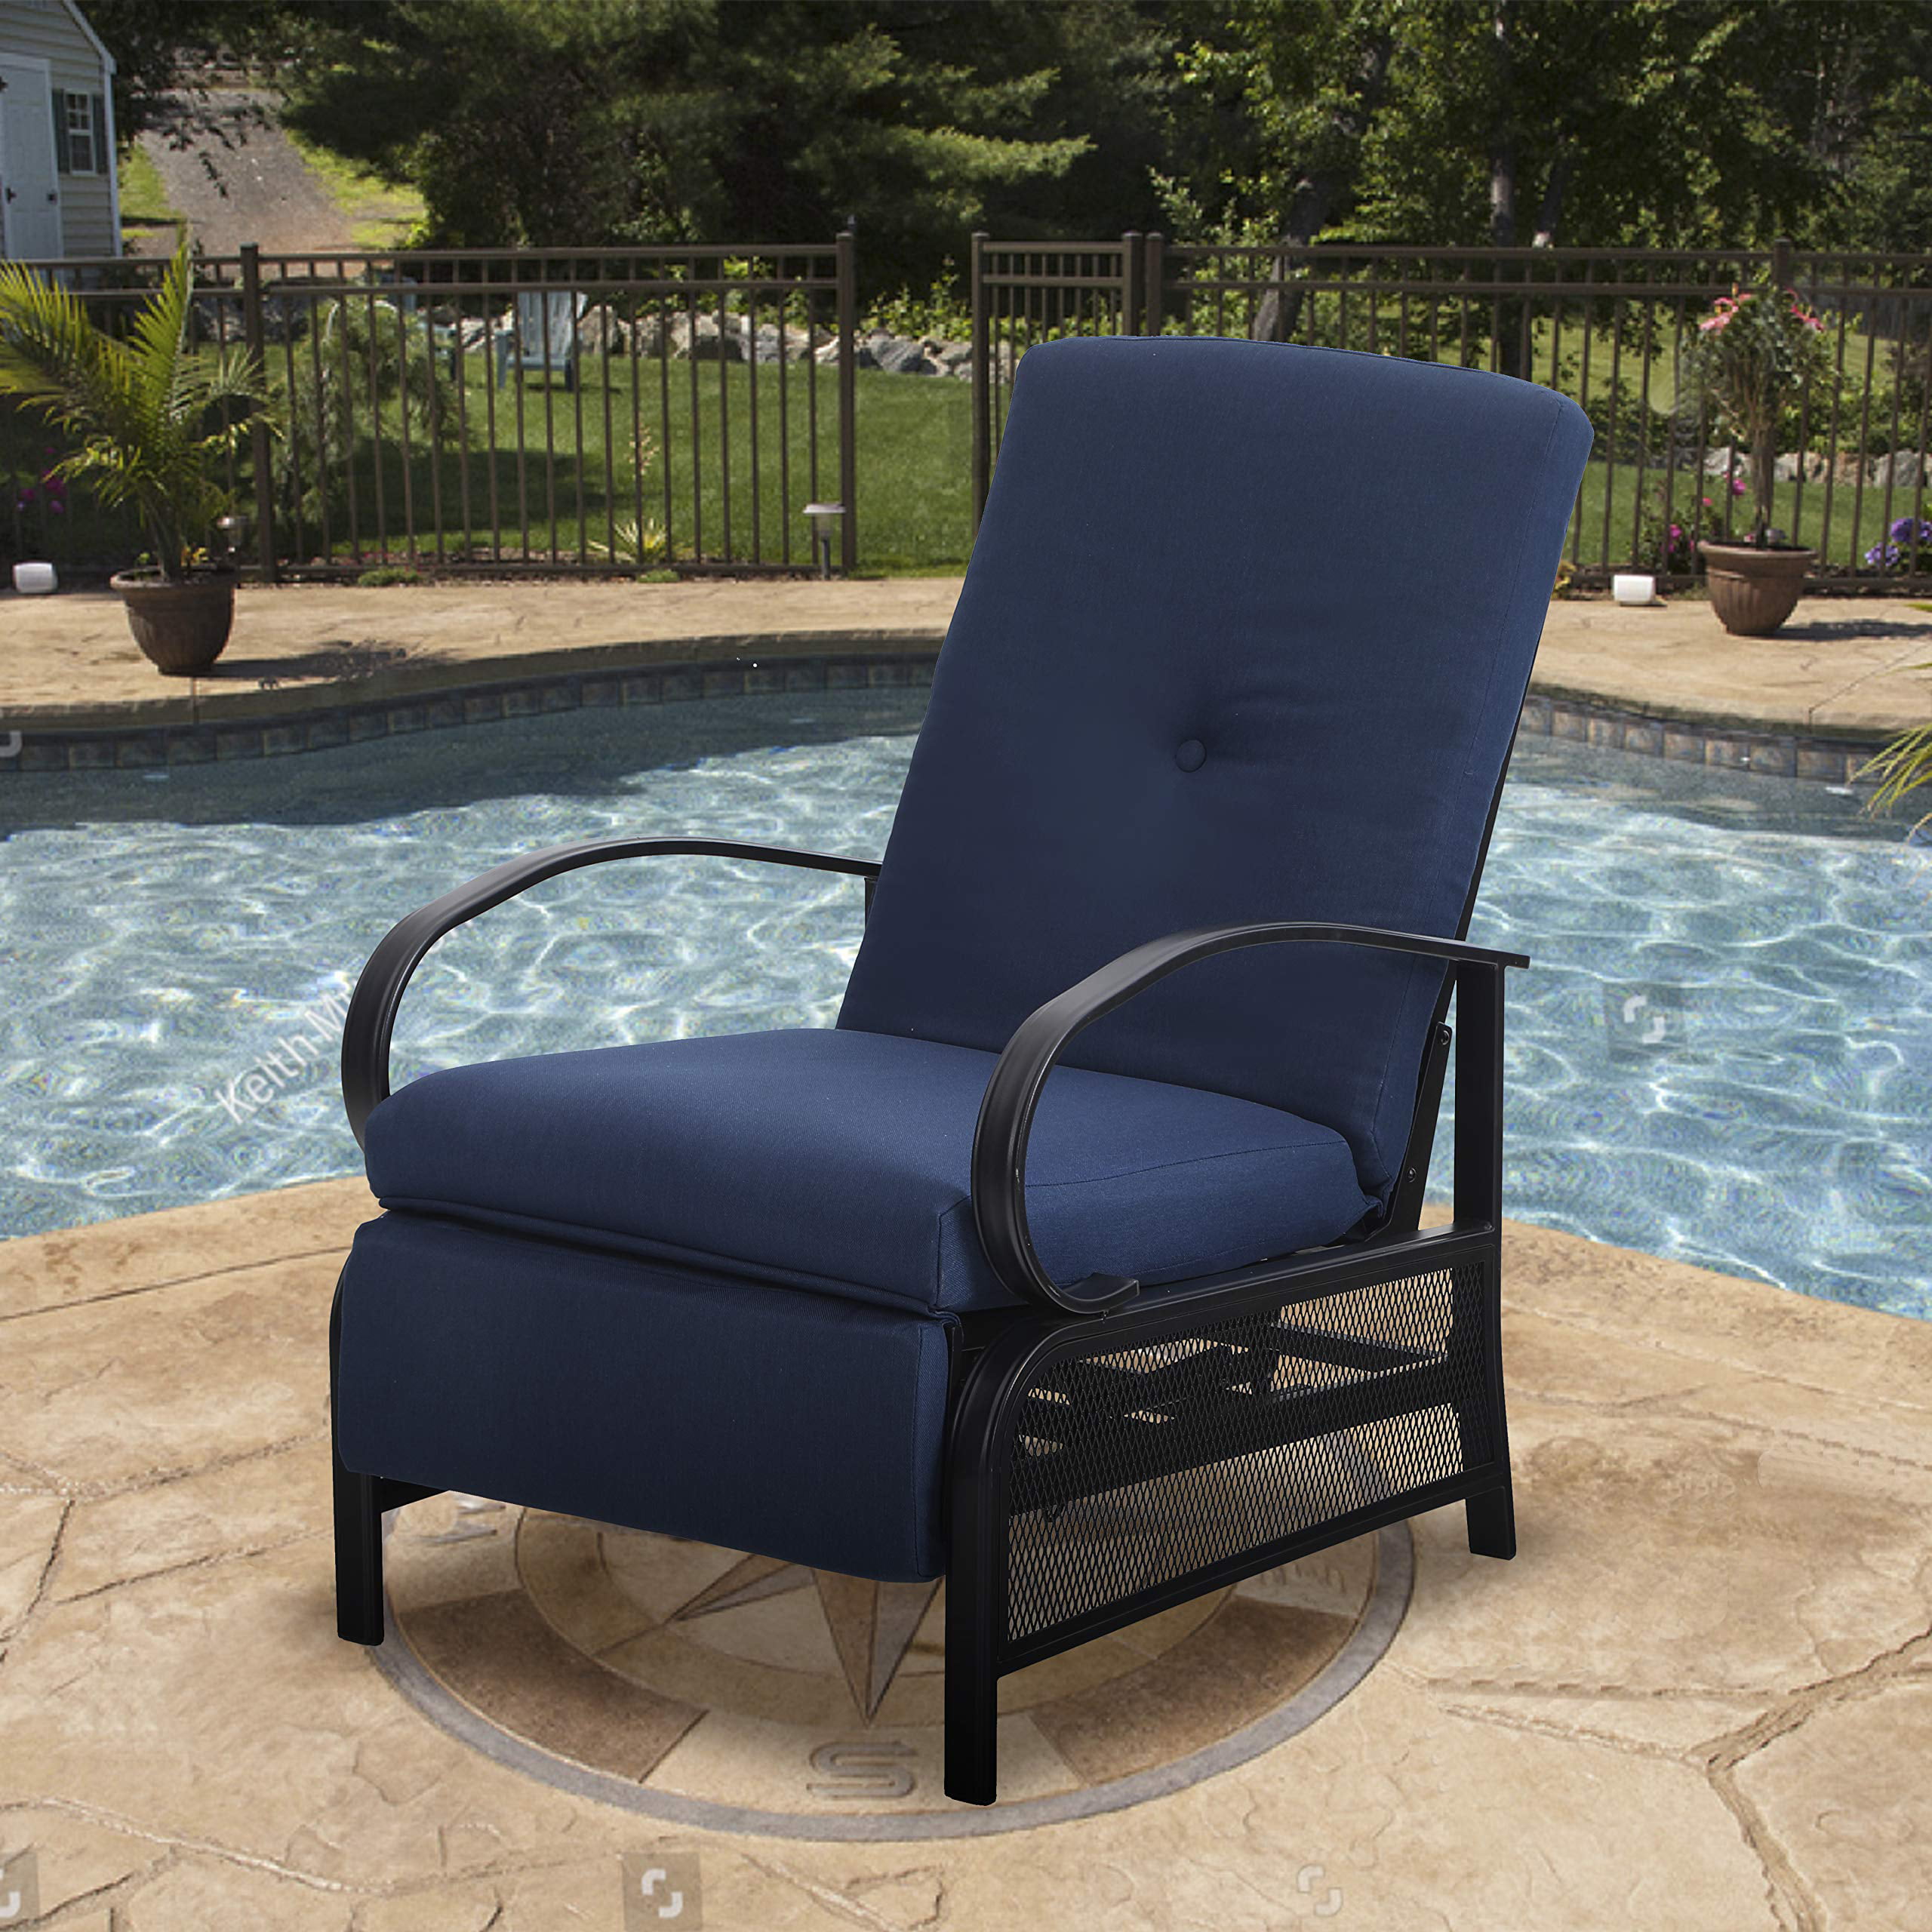 mf studio patio recliner chair metal adjustable back outdoor lounge